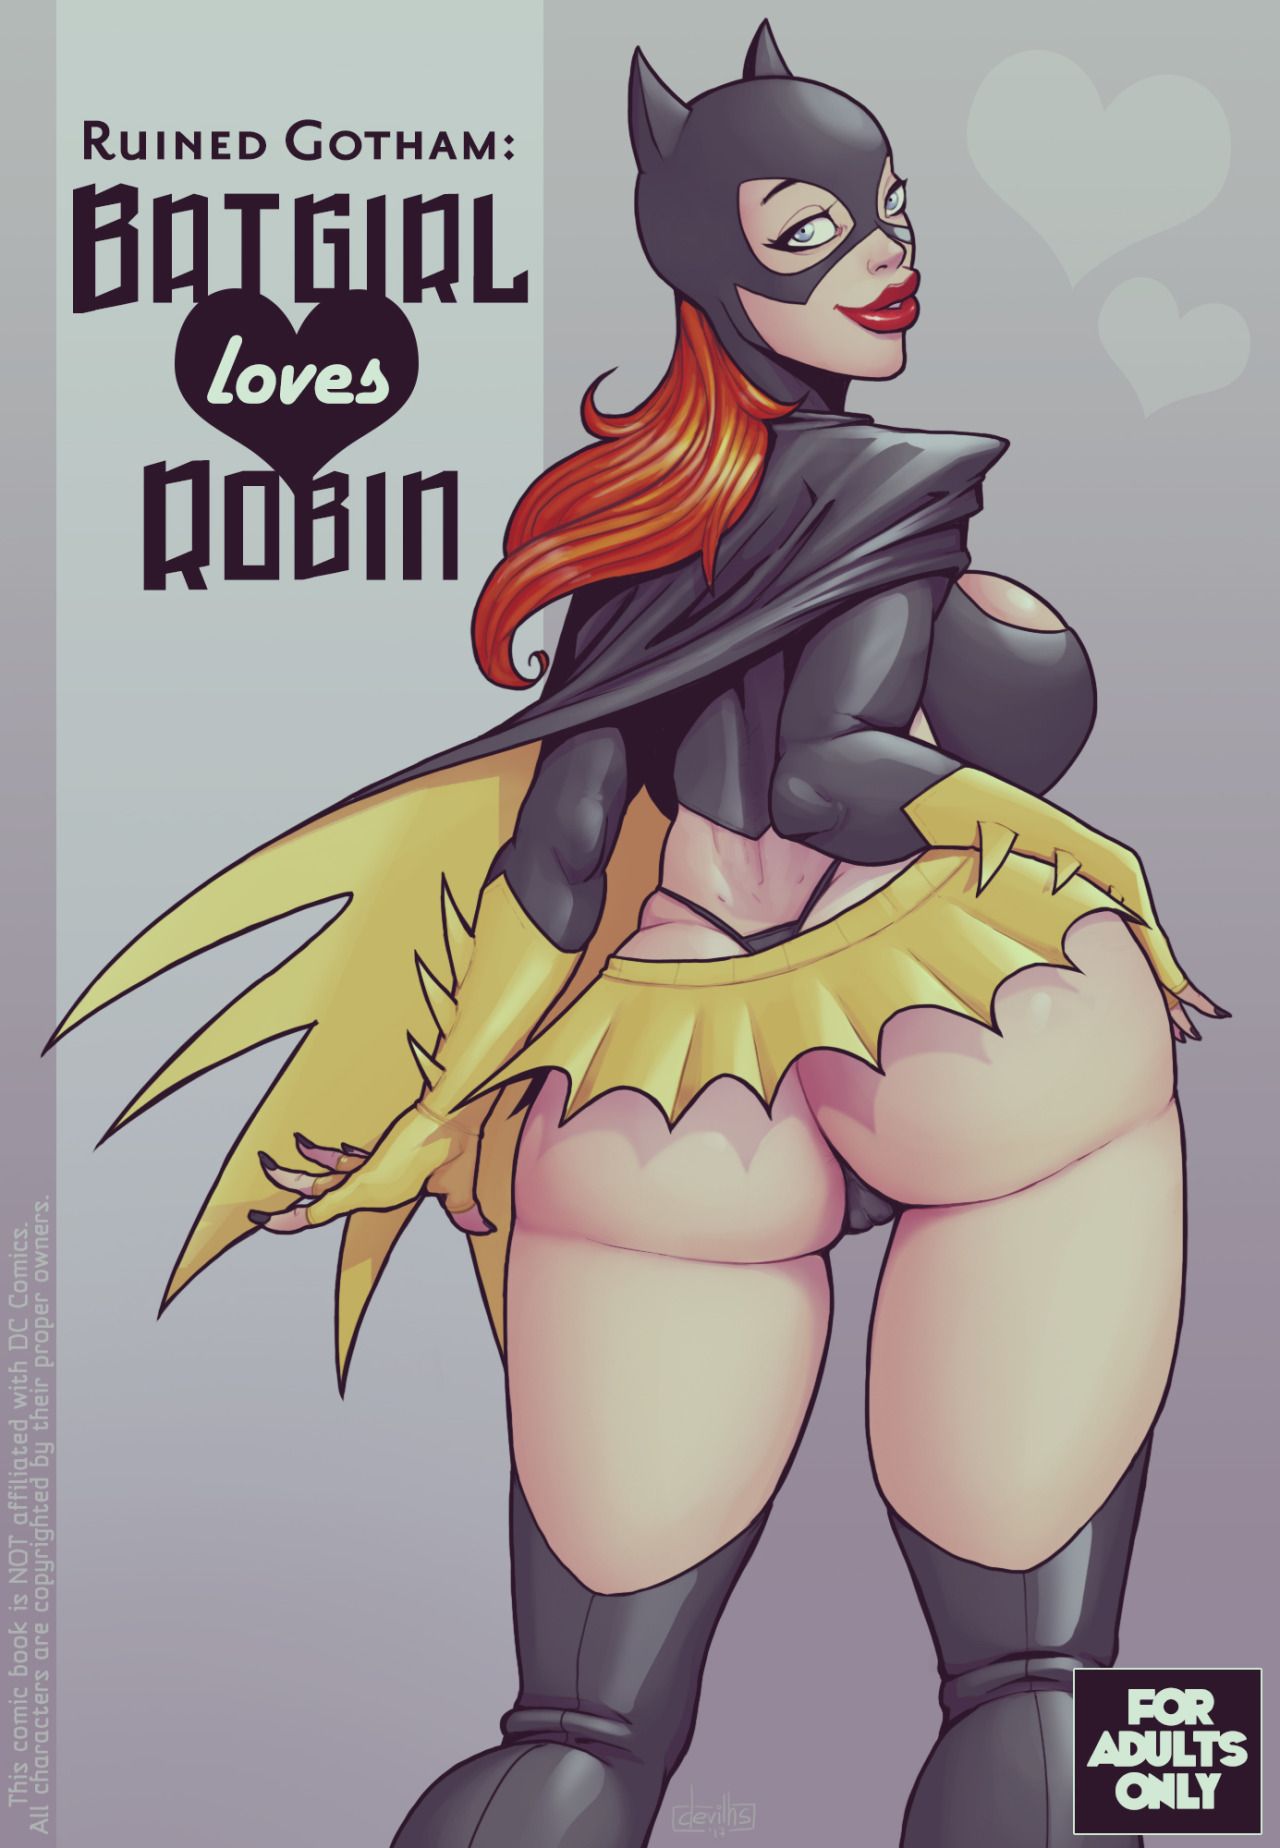 [DevilHS] Ruined Gotham: Batgirl loves Robin 1